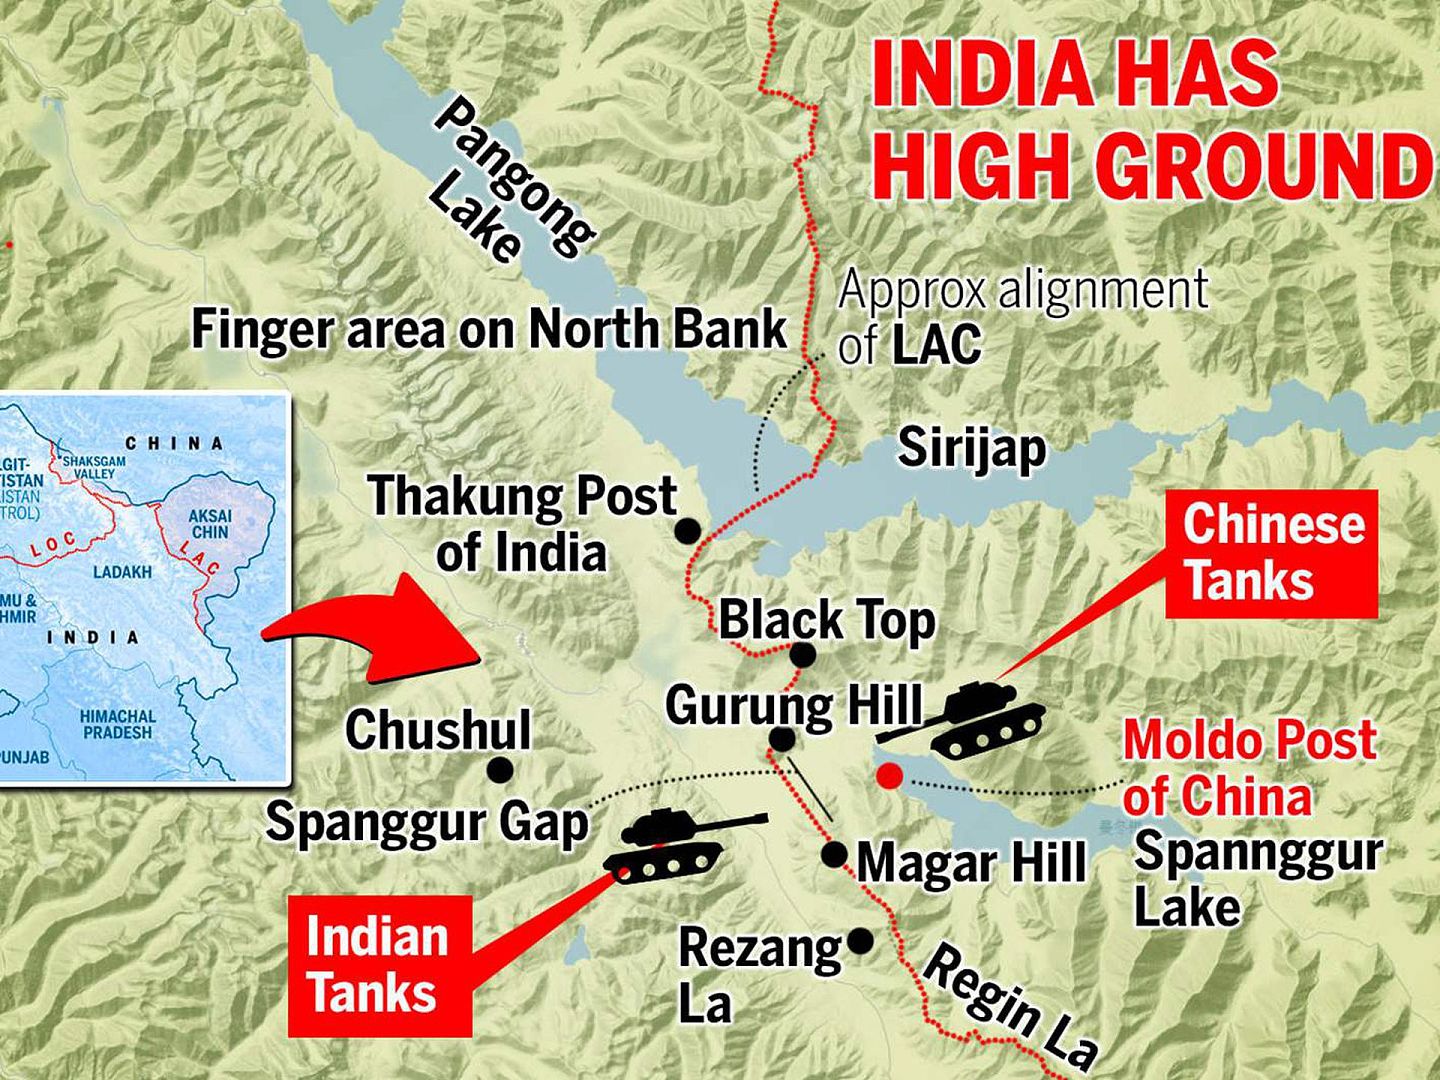 印度军队8月29日晚采取行动，占领了班公湖南岸关键高地。 两军已出动坦克对峙，局势一触即发。 （The Times of India）